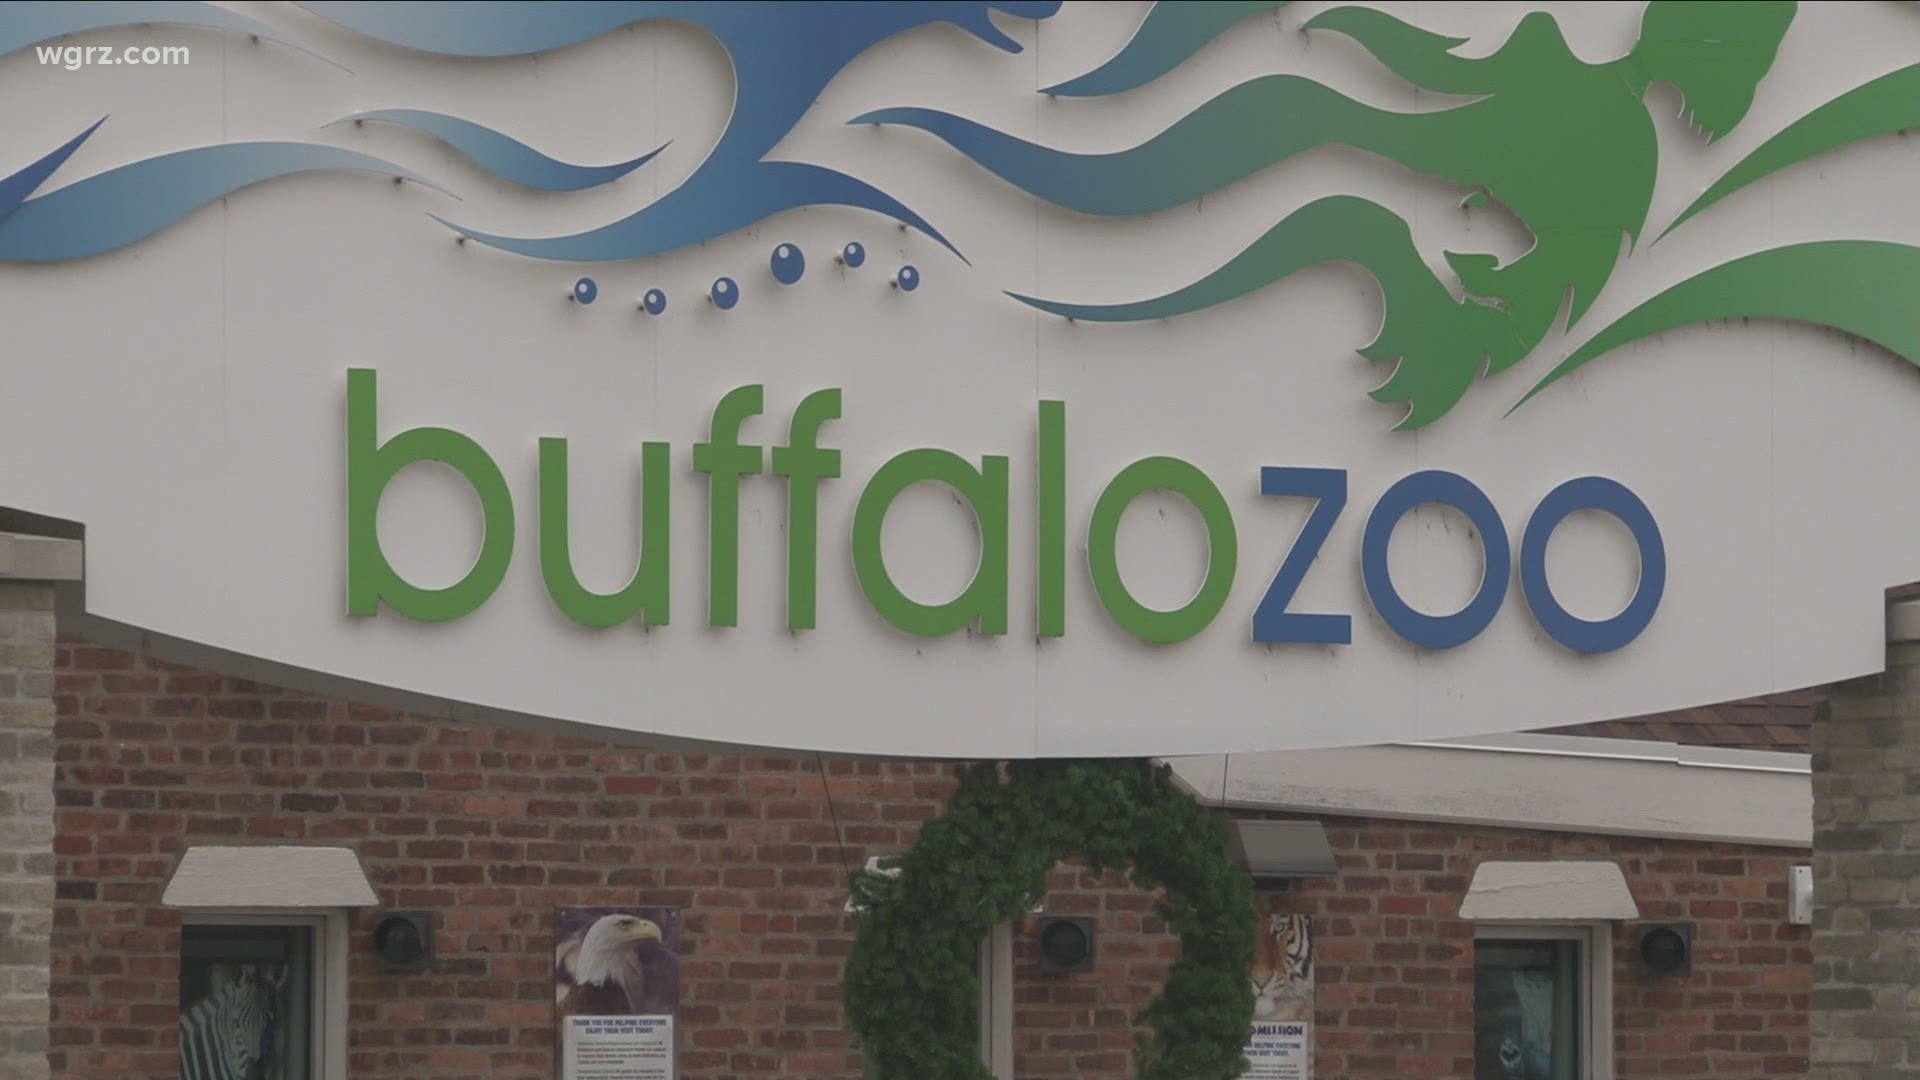 Buffalo Zoo loses $4M in revenue